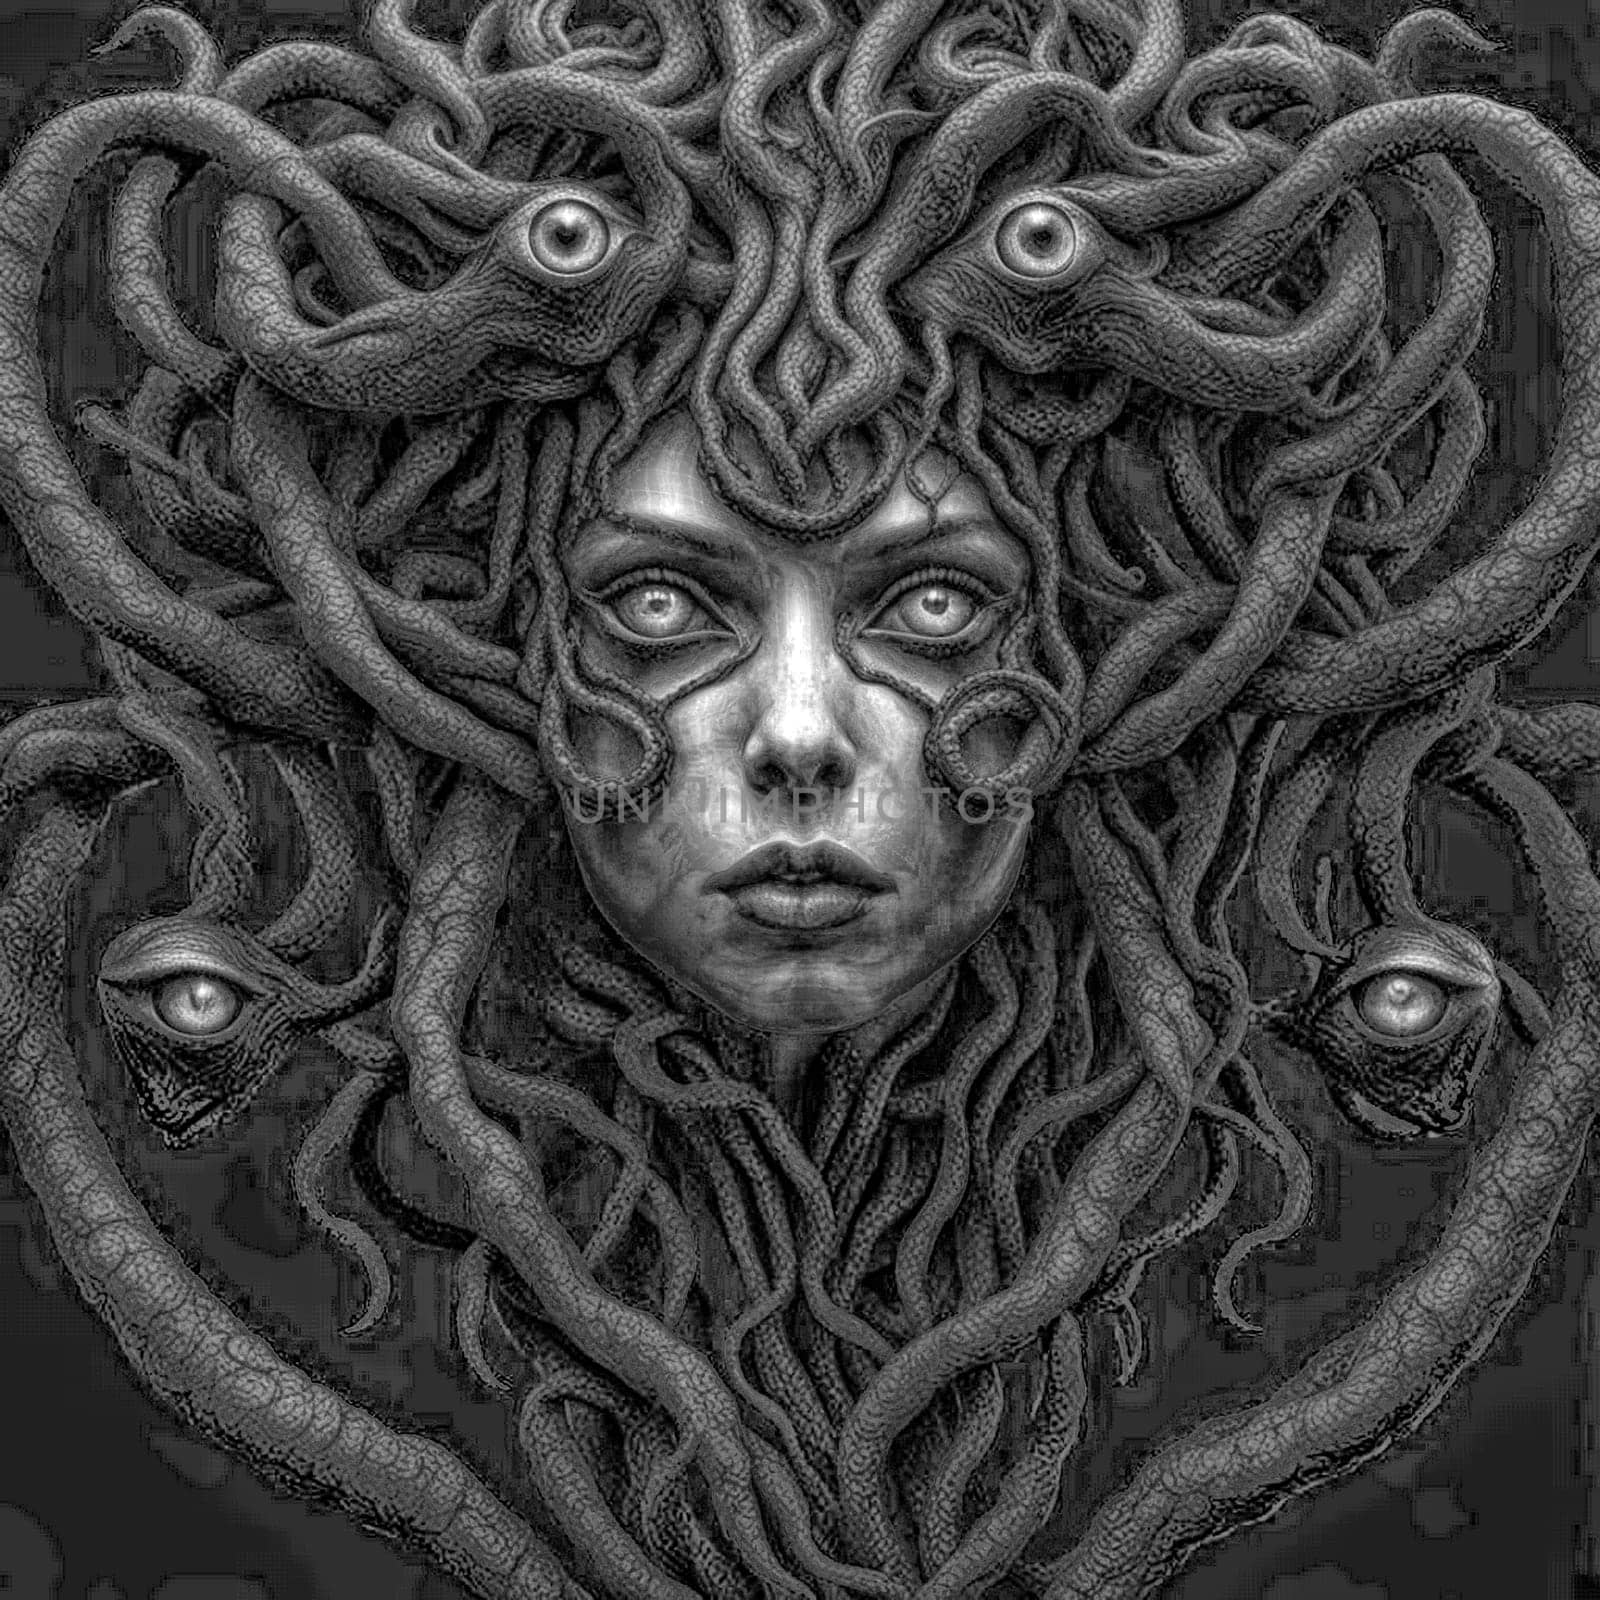 Monochrome portrait of a Medusa like human figure by Vailatese46